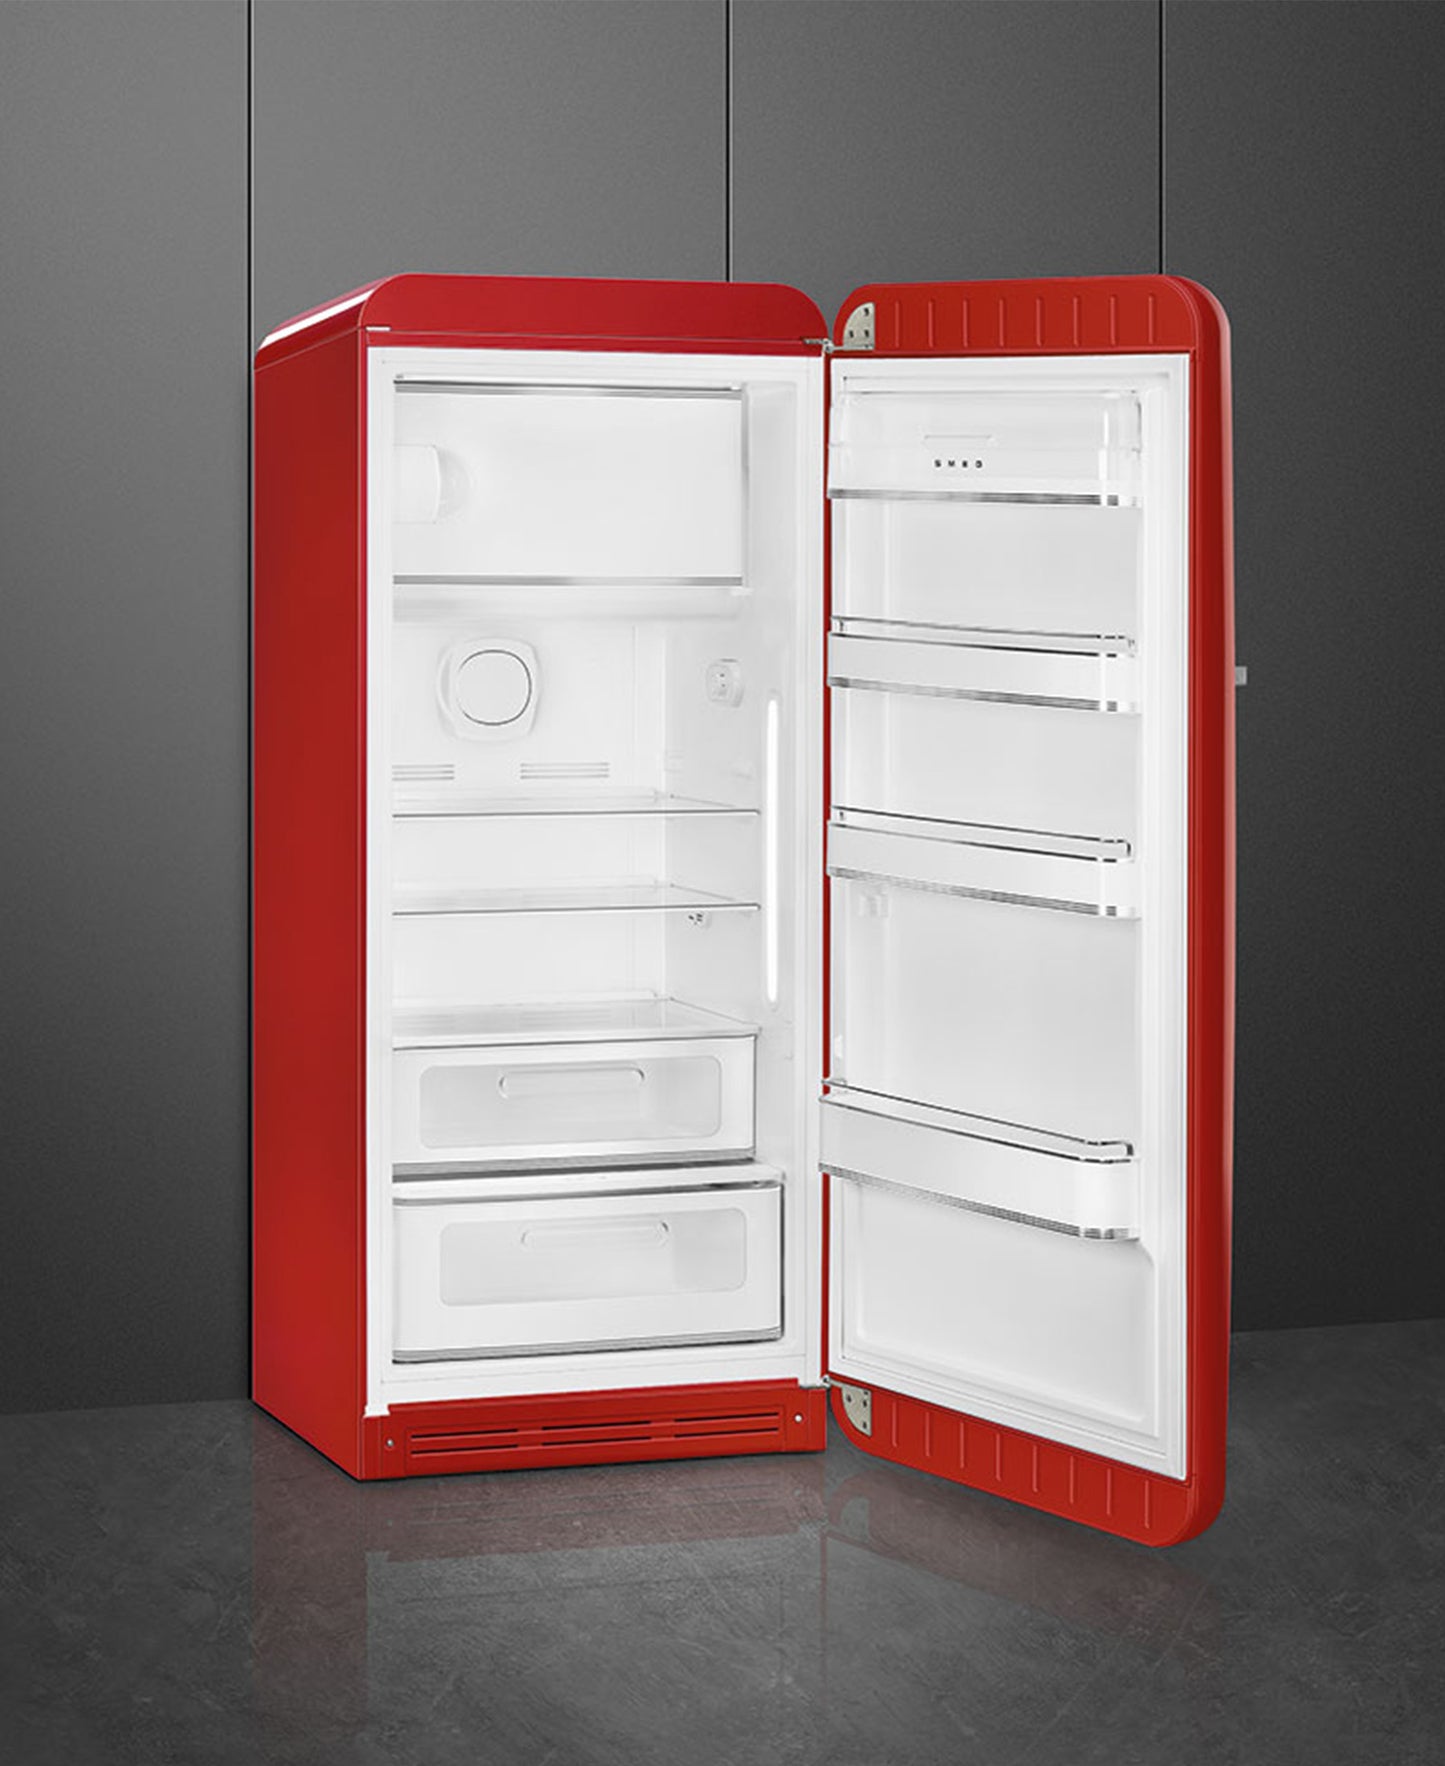 Smeg Retro Refrigerator - Fiery Red